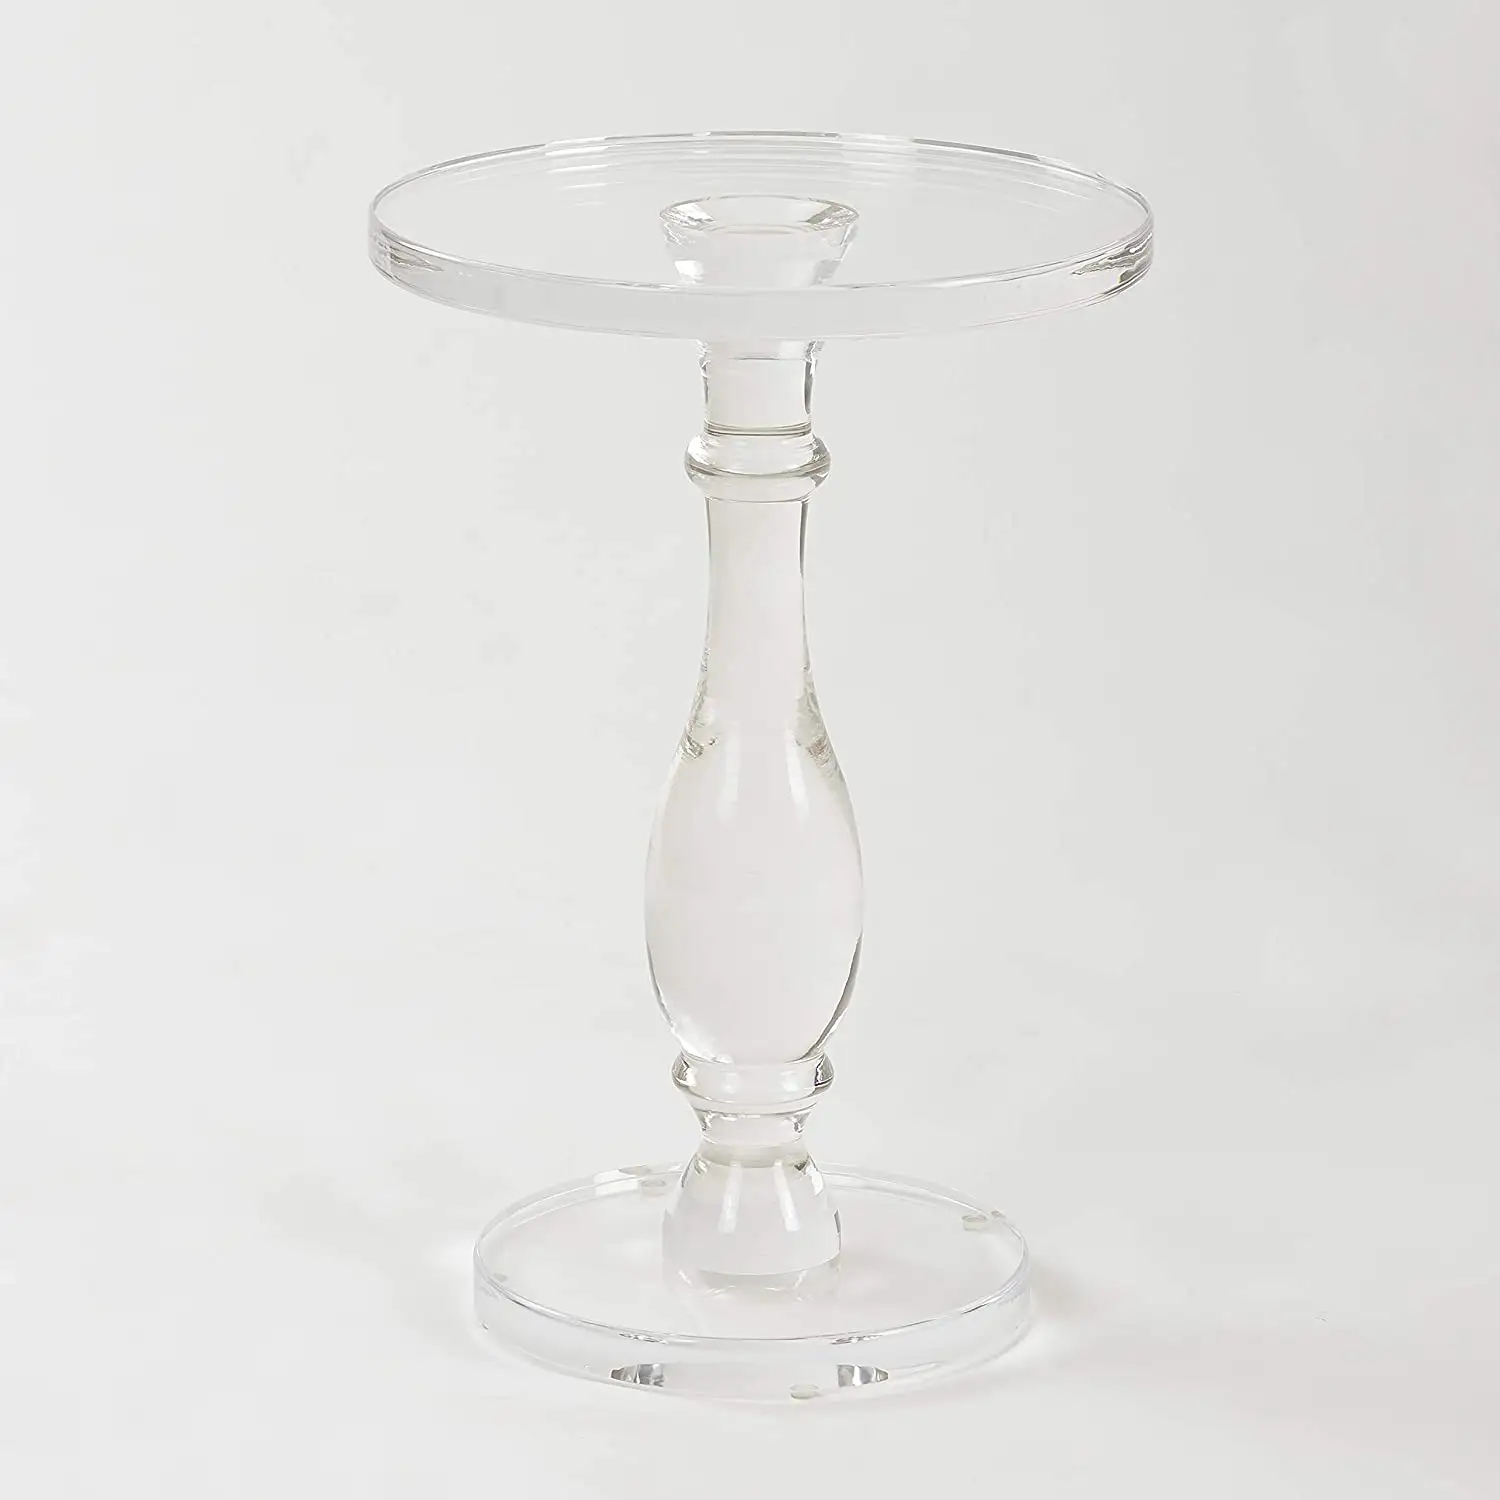 Tavolino in acrilico tavolino in acrilico comodino moderno con piano rotondo piccolo trasparente e palo solido